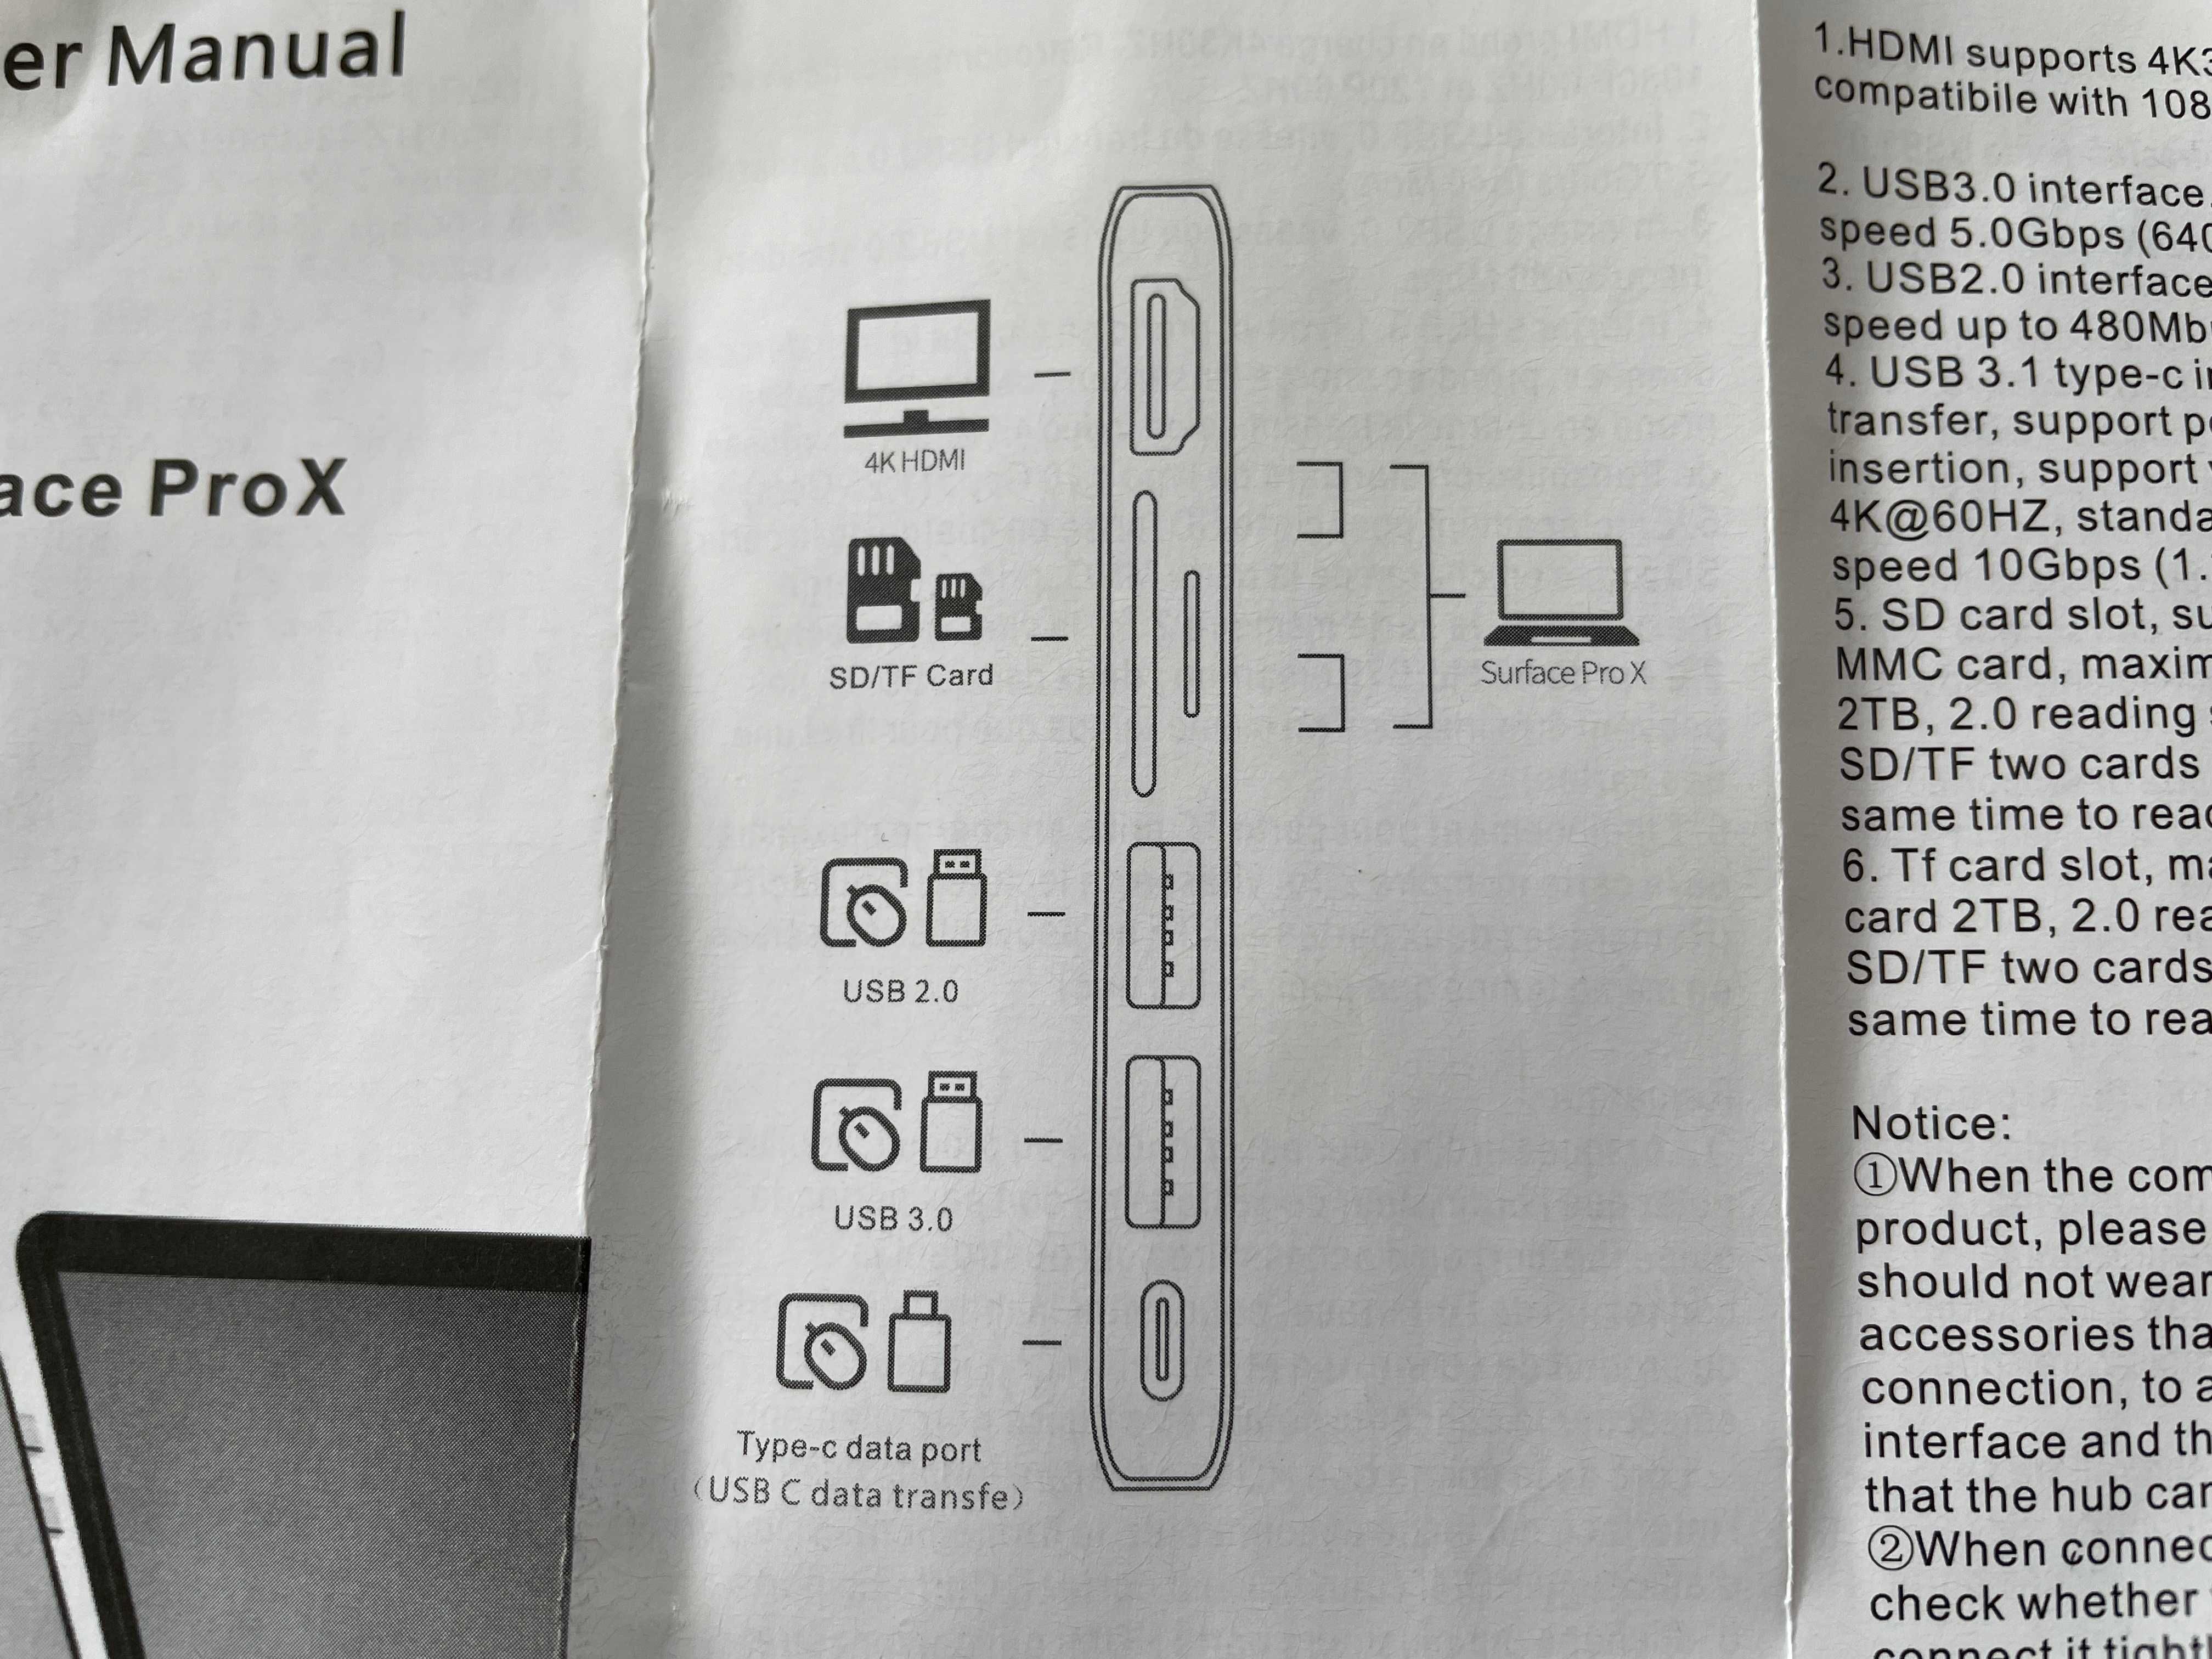 Hub Adapter Przejsciowka 6w1 Do Surface Pro X HDMI USB 3.0 Jaworzno.